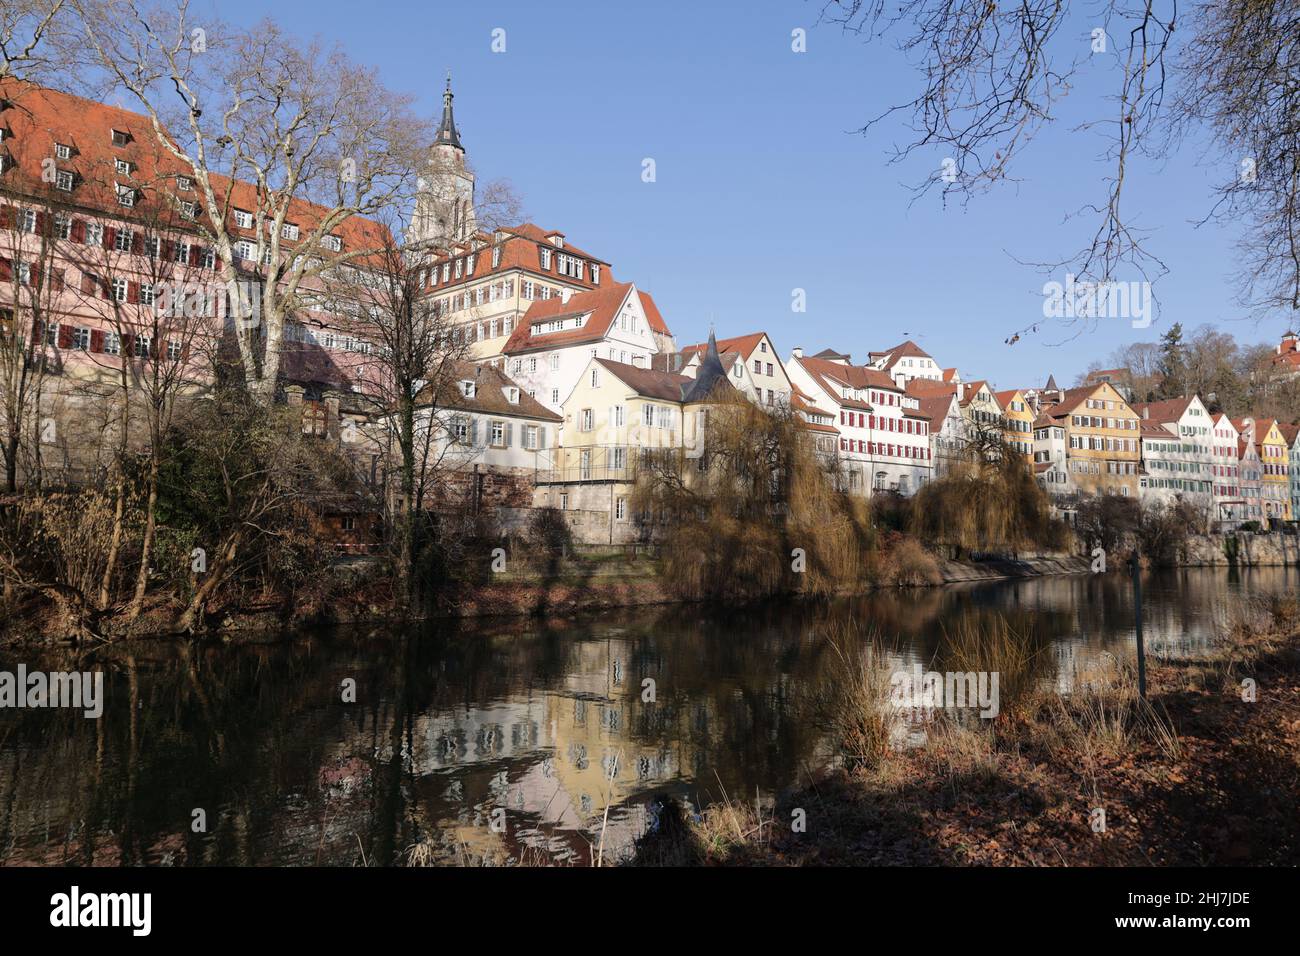 Blick in die Altstadt von Tübingen am Neckar Stock Photo